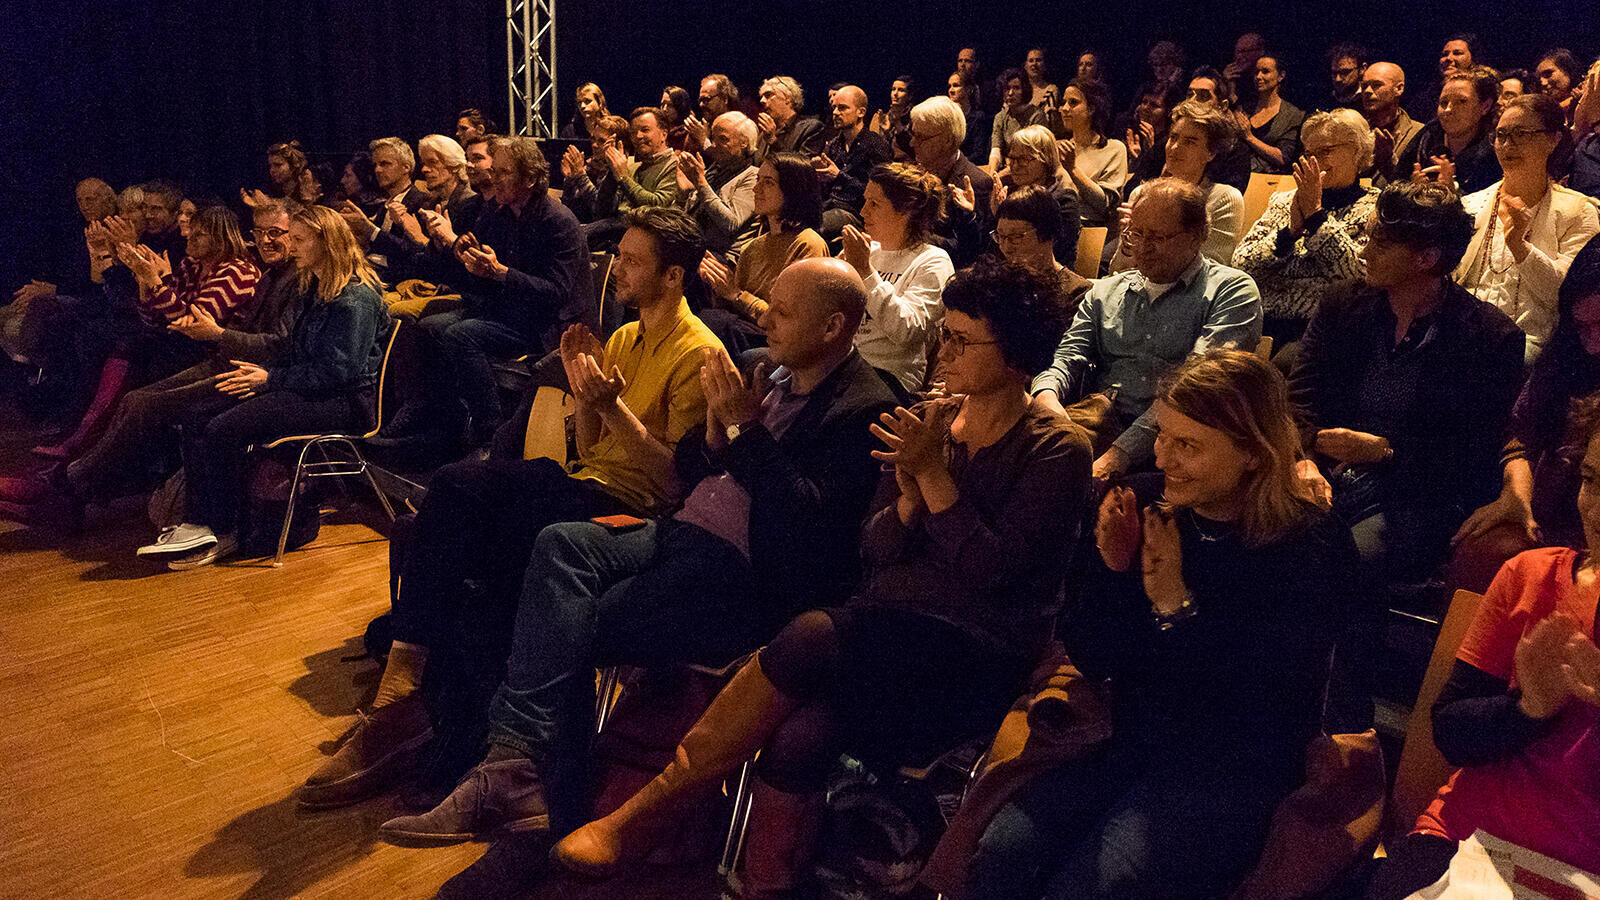 Festival Cement en Volksuniversiteit Den Bosch presenteren nieuwe cursus over hedendaags theater